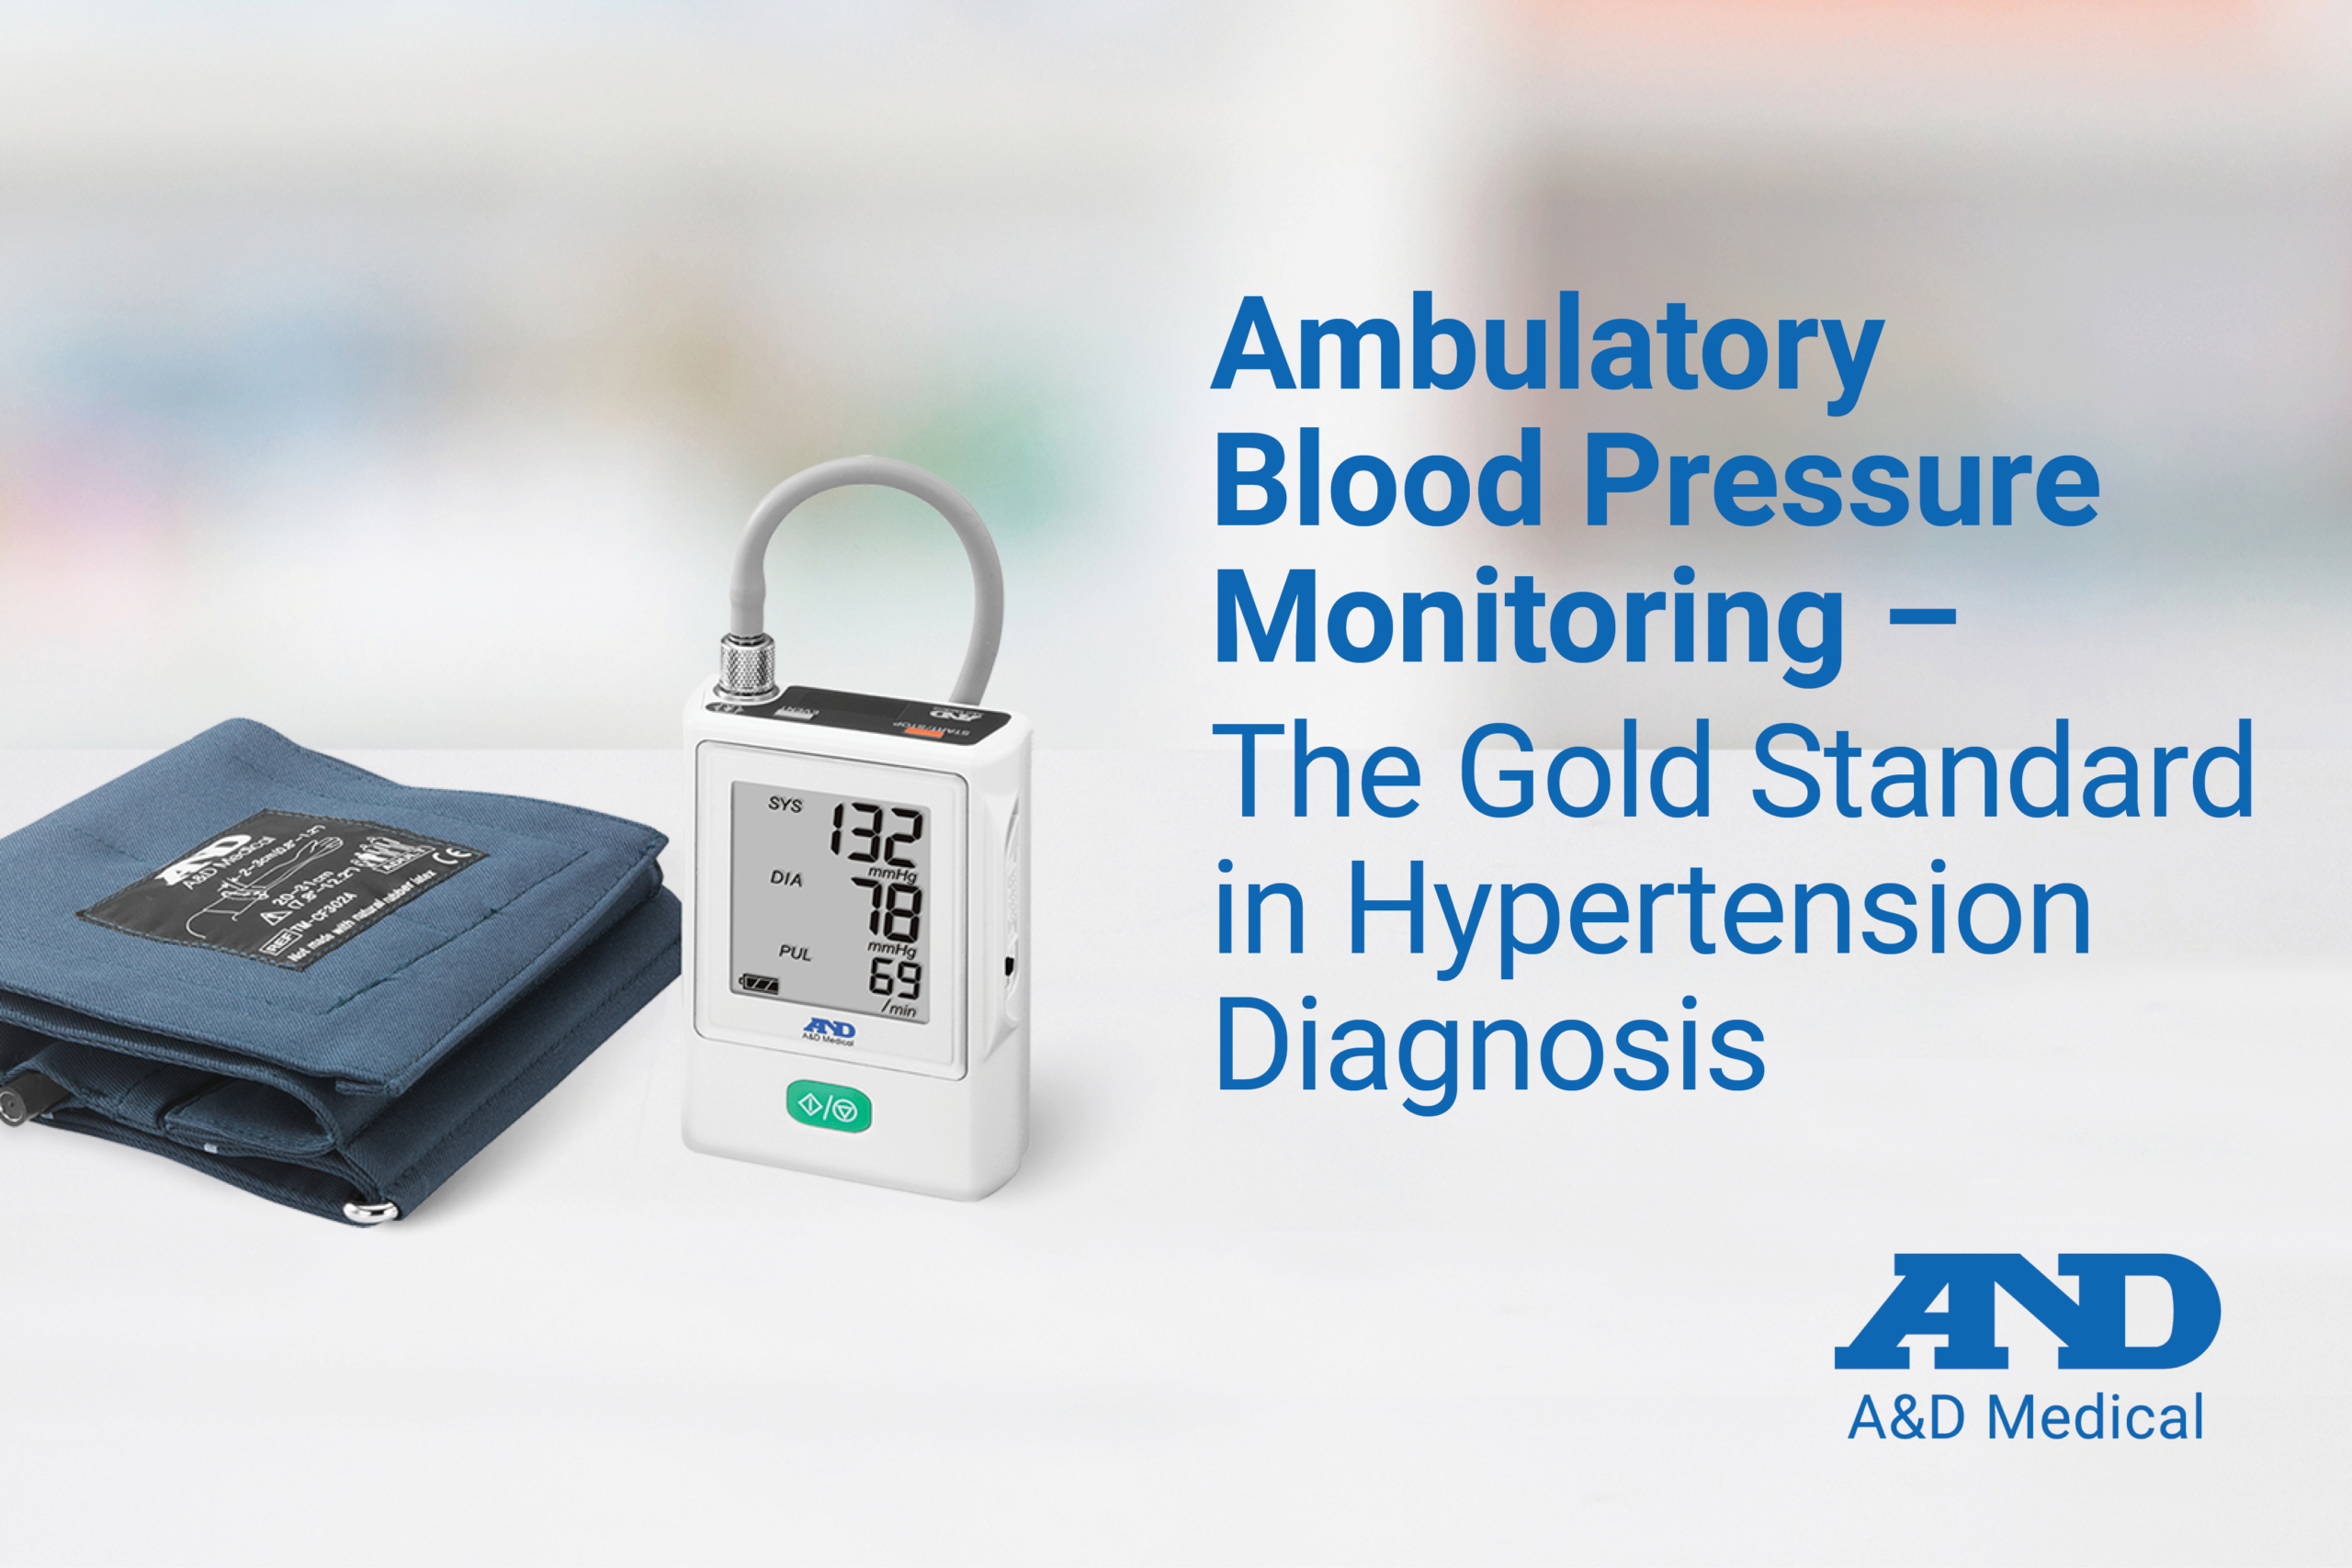 Ambulatory blood pressure monitoring